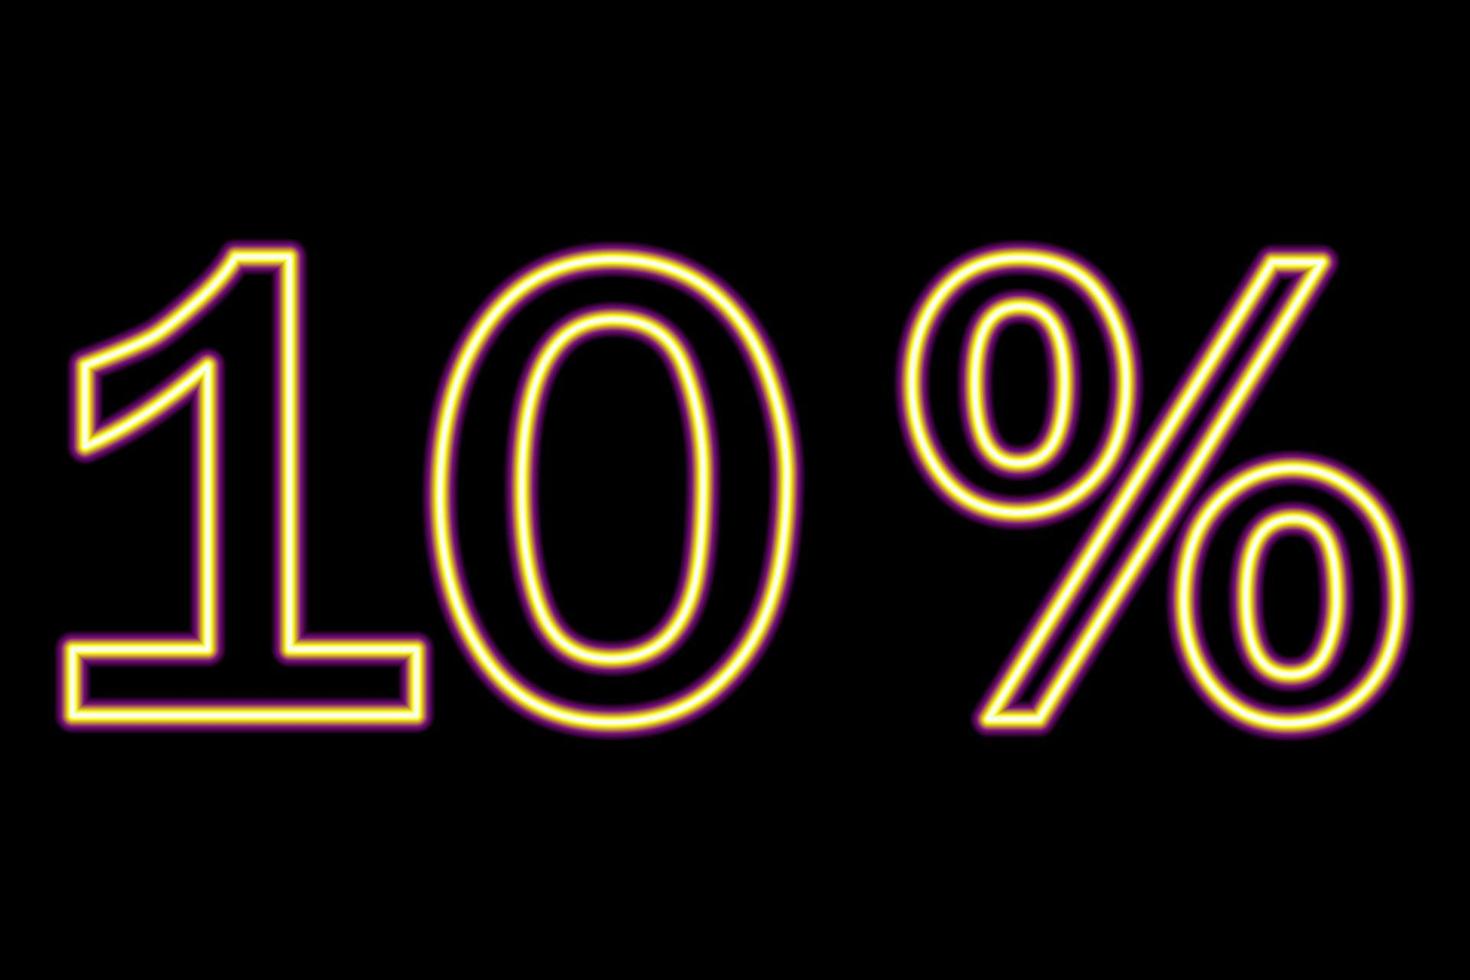 Iscrizione del 10 percento su sfondo nero. linea giallo-viola in stile neon. vettore